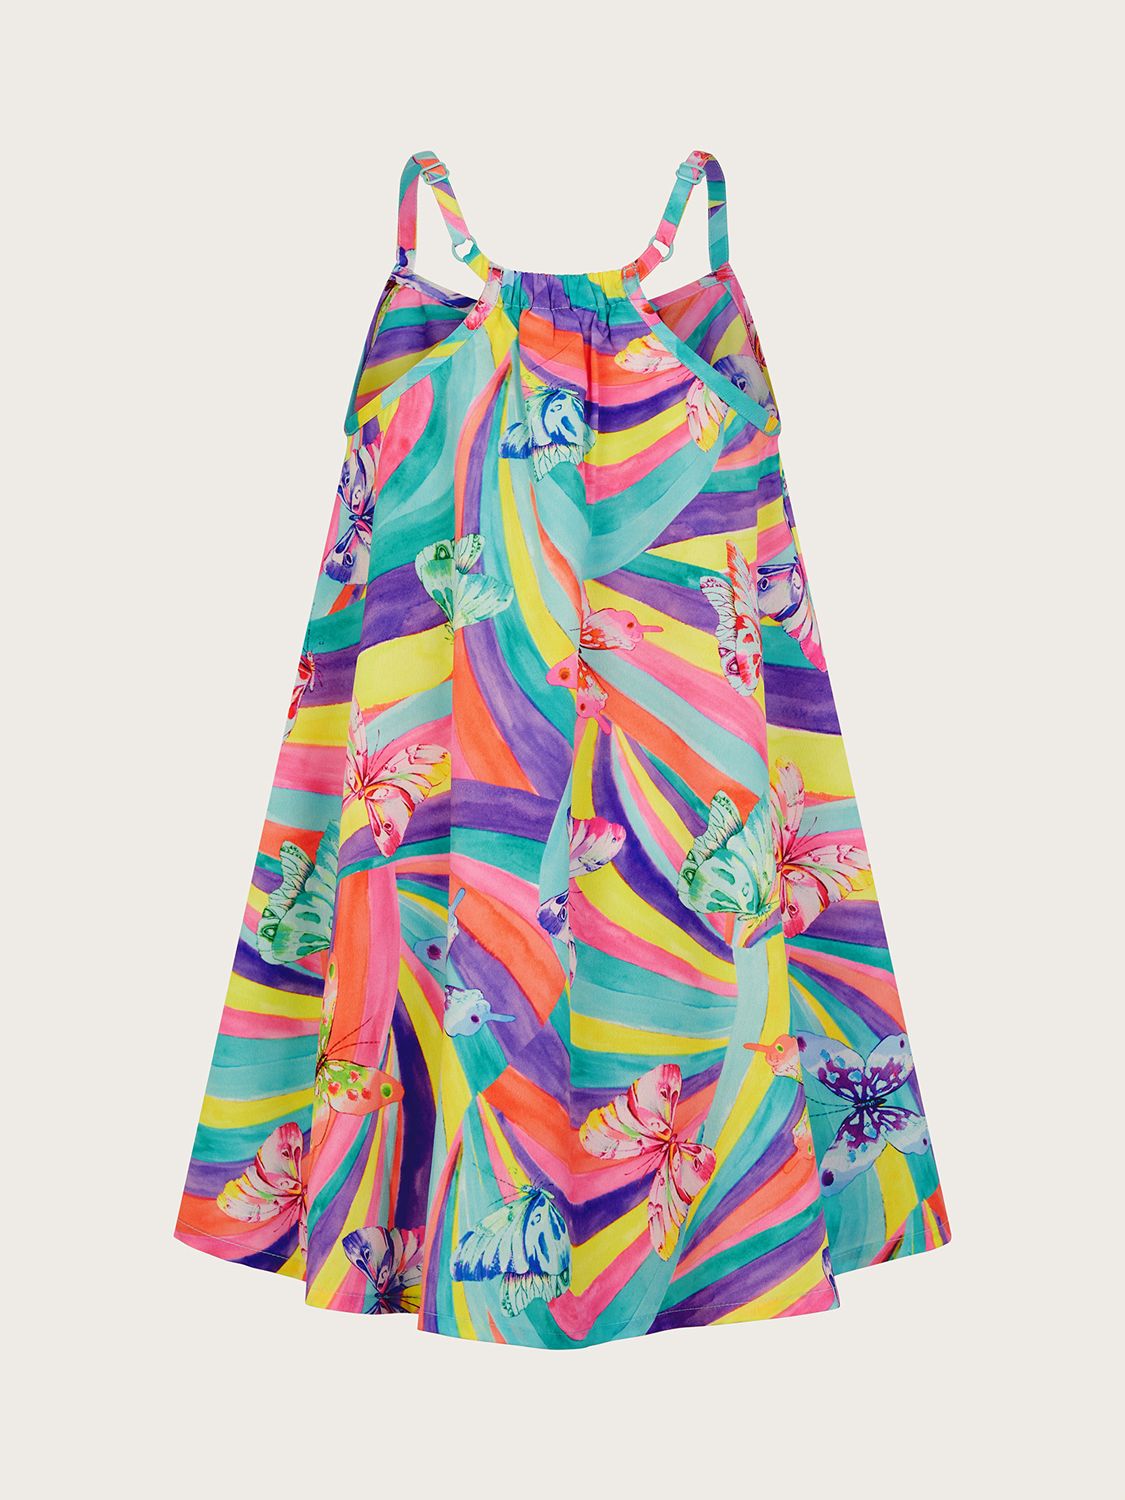 Monsoon Kids' Butterfly Swirl Dress, Multi, 3-4 years